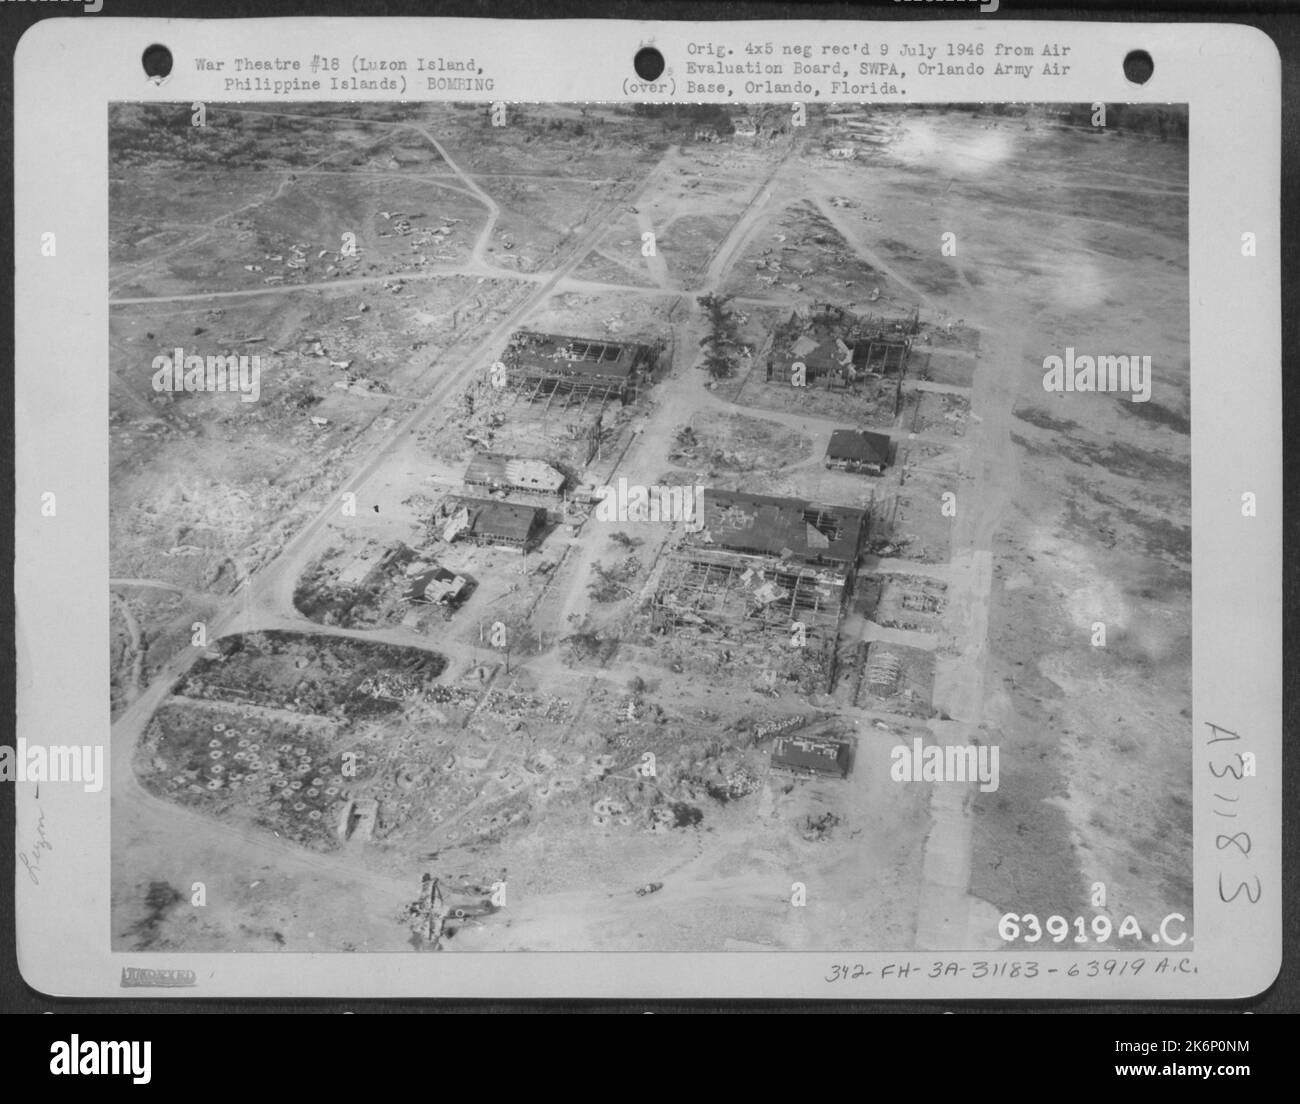 Die Hangars auf dem Clark-Feld, aus der Luft gesehen, nachdem die USA bombardiert hatten Kräfte. Luzon Island, Philippinische Inseln, 1945. Stockfoto